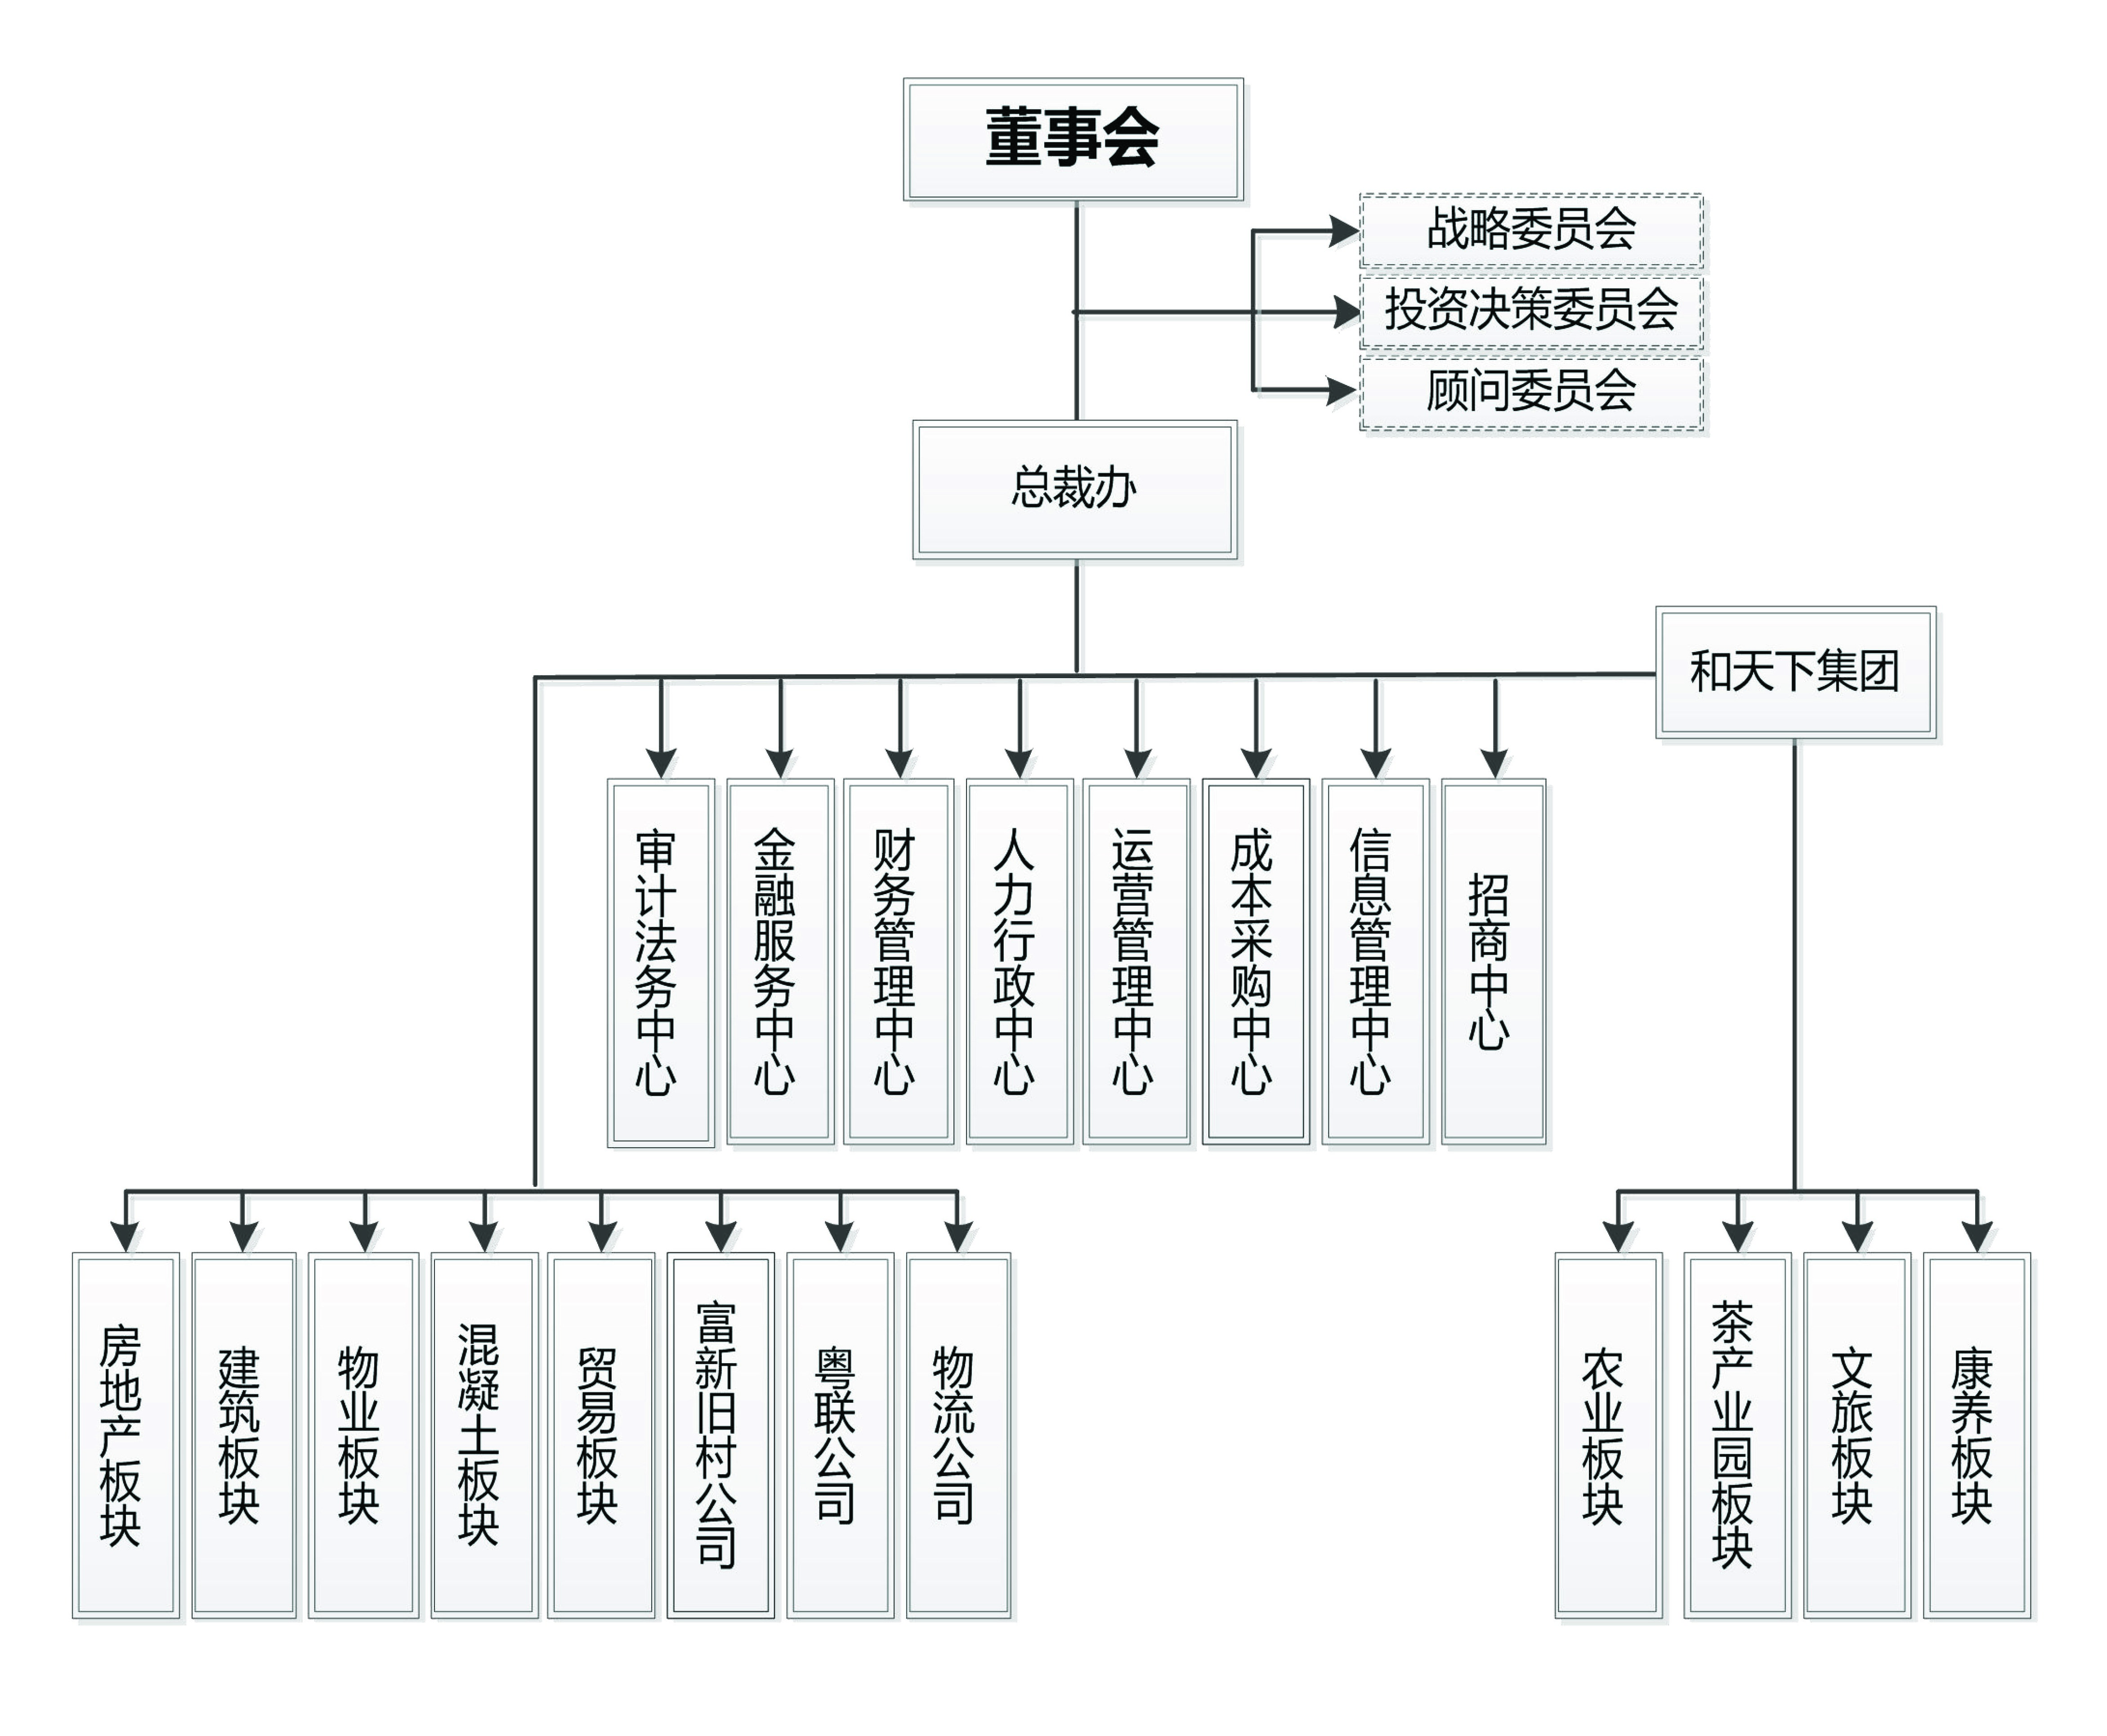 组织架构（图片） (1).jpg